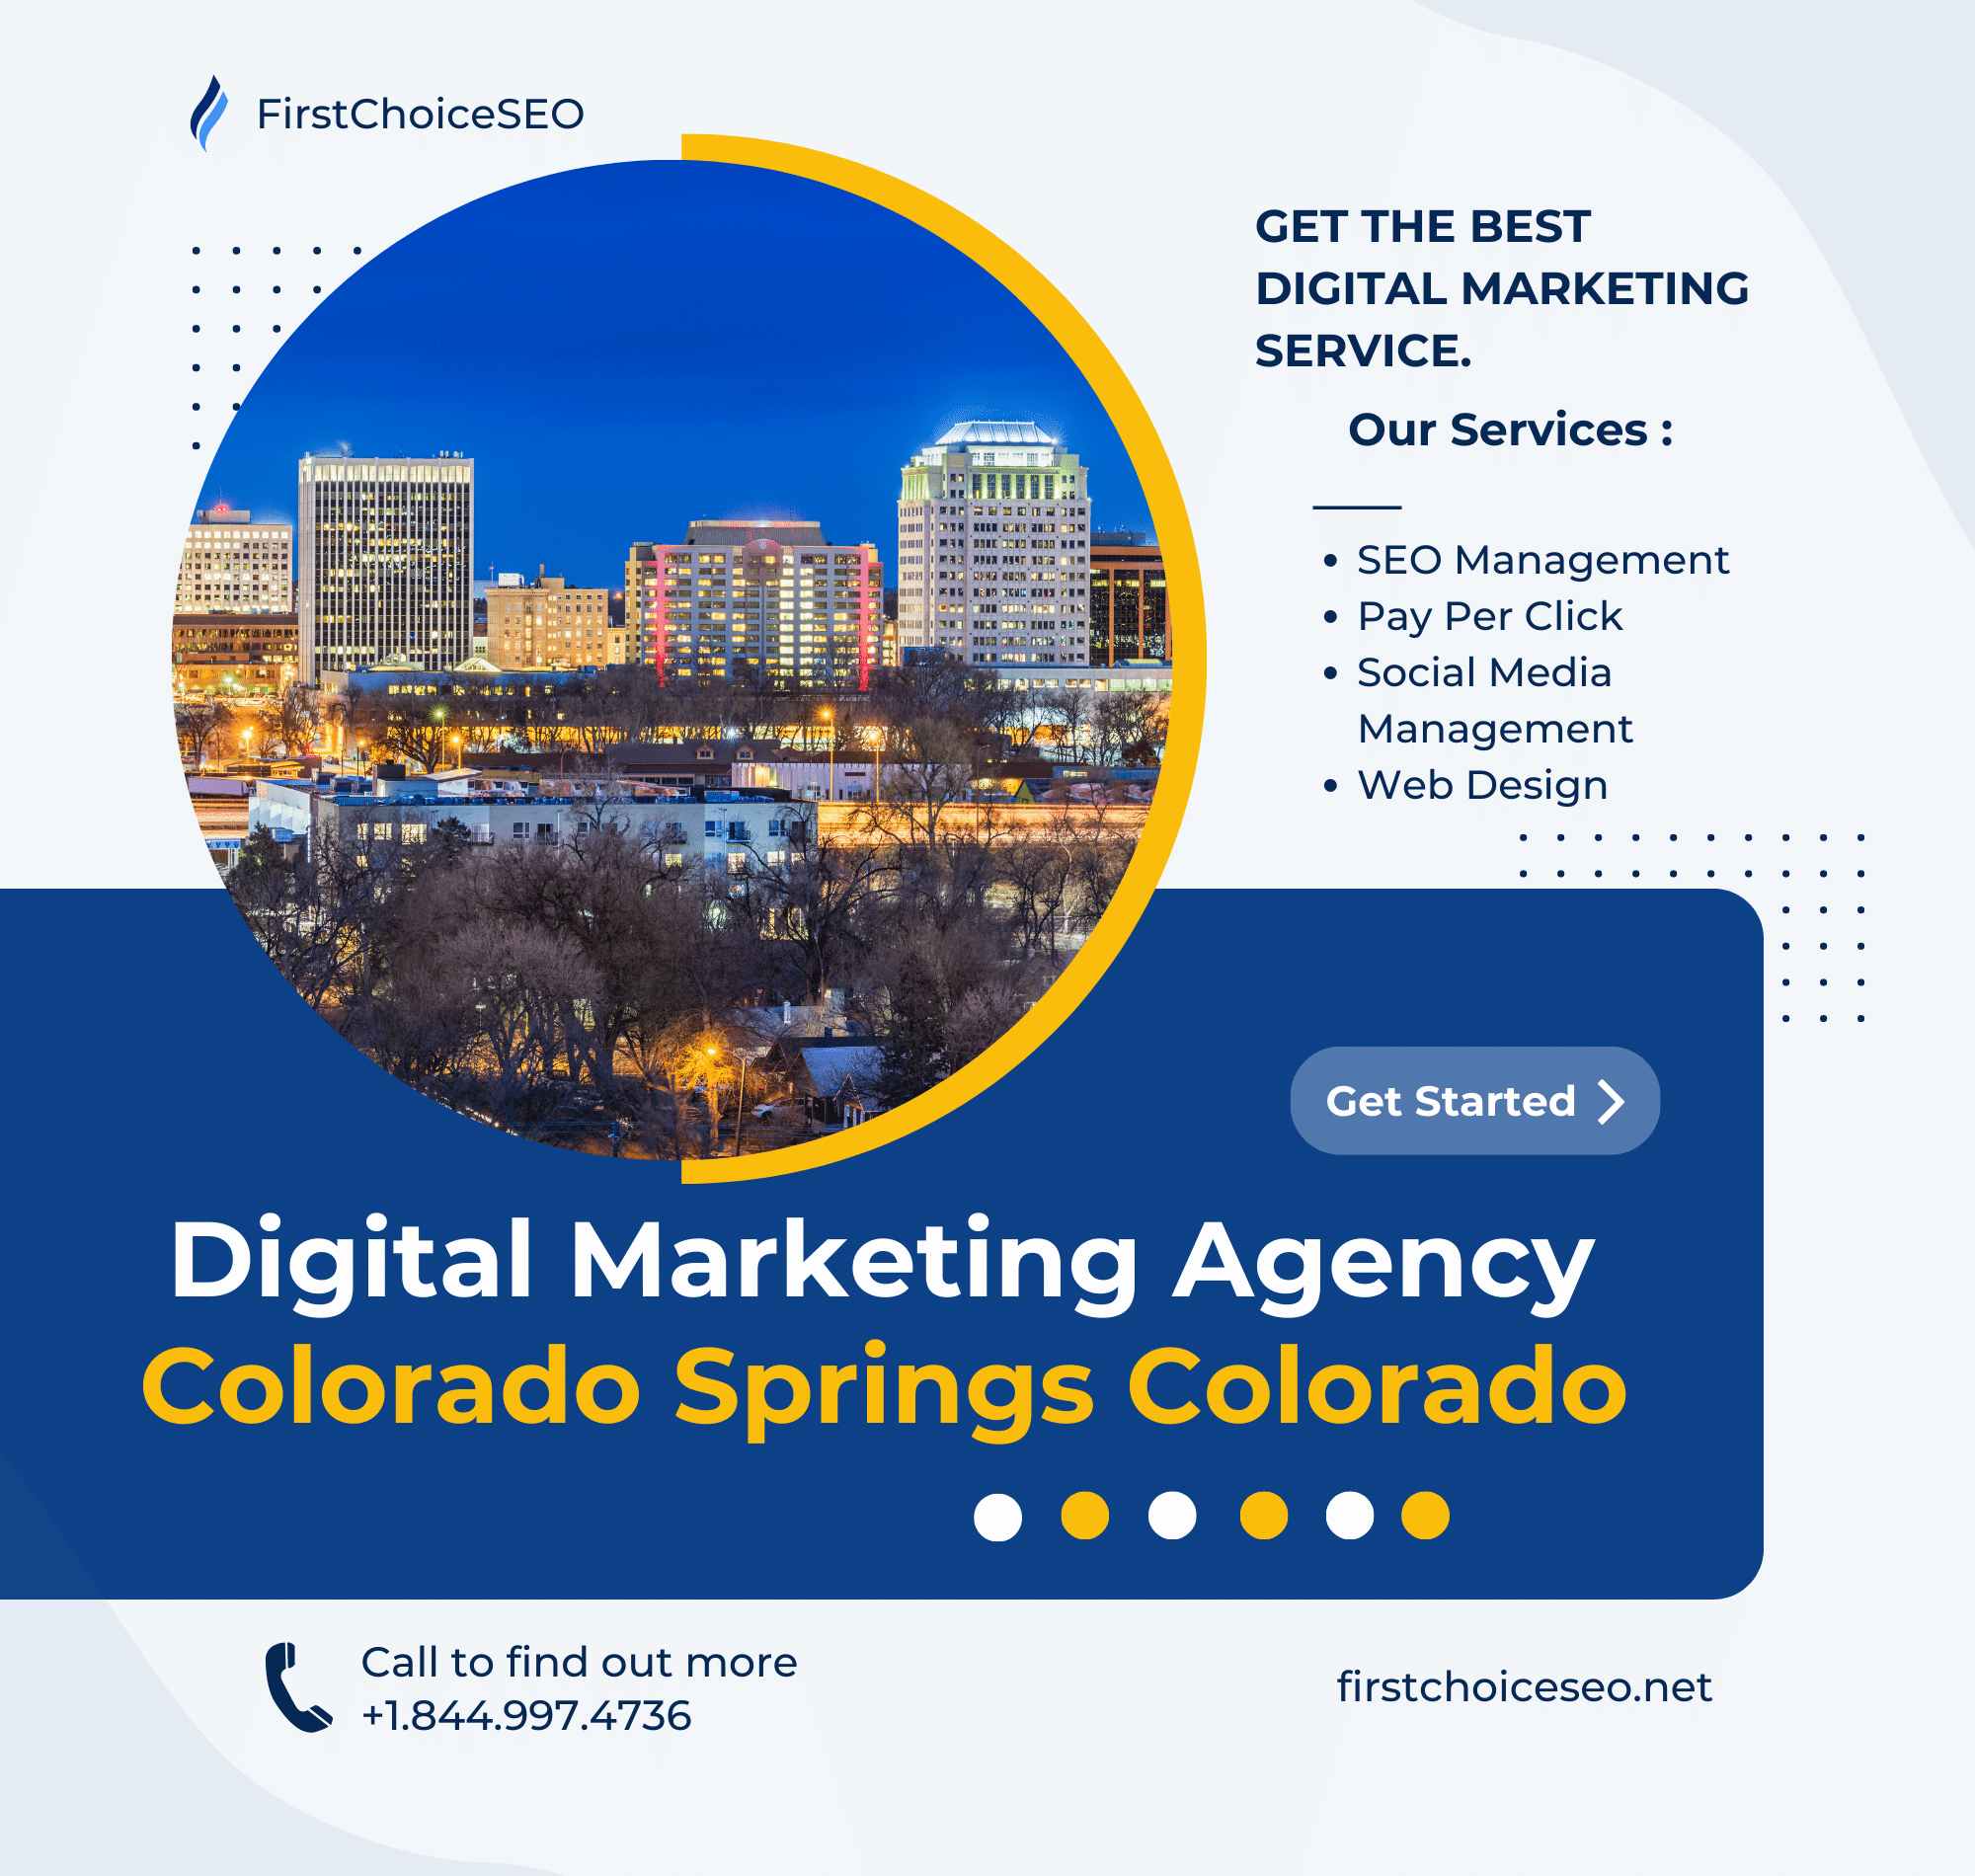 Digital Marketing Services in Colorado Springs CO